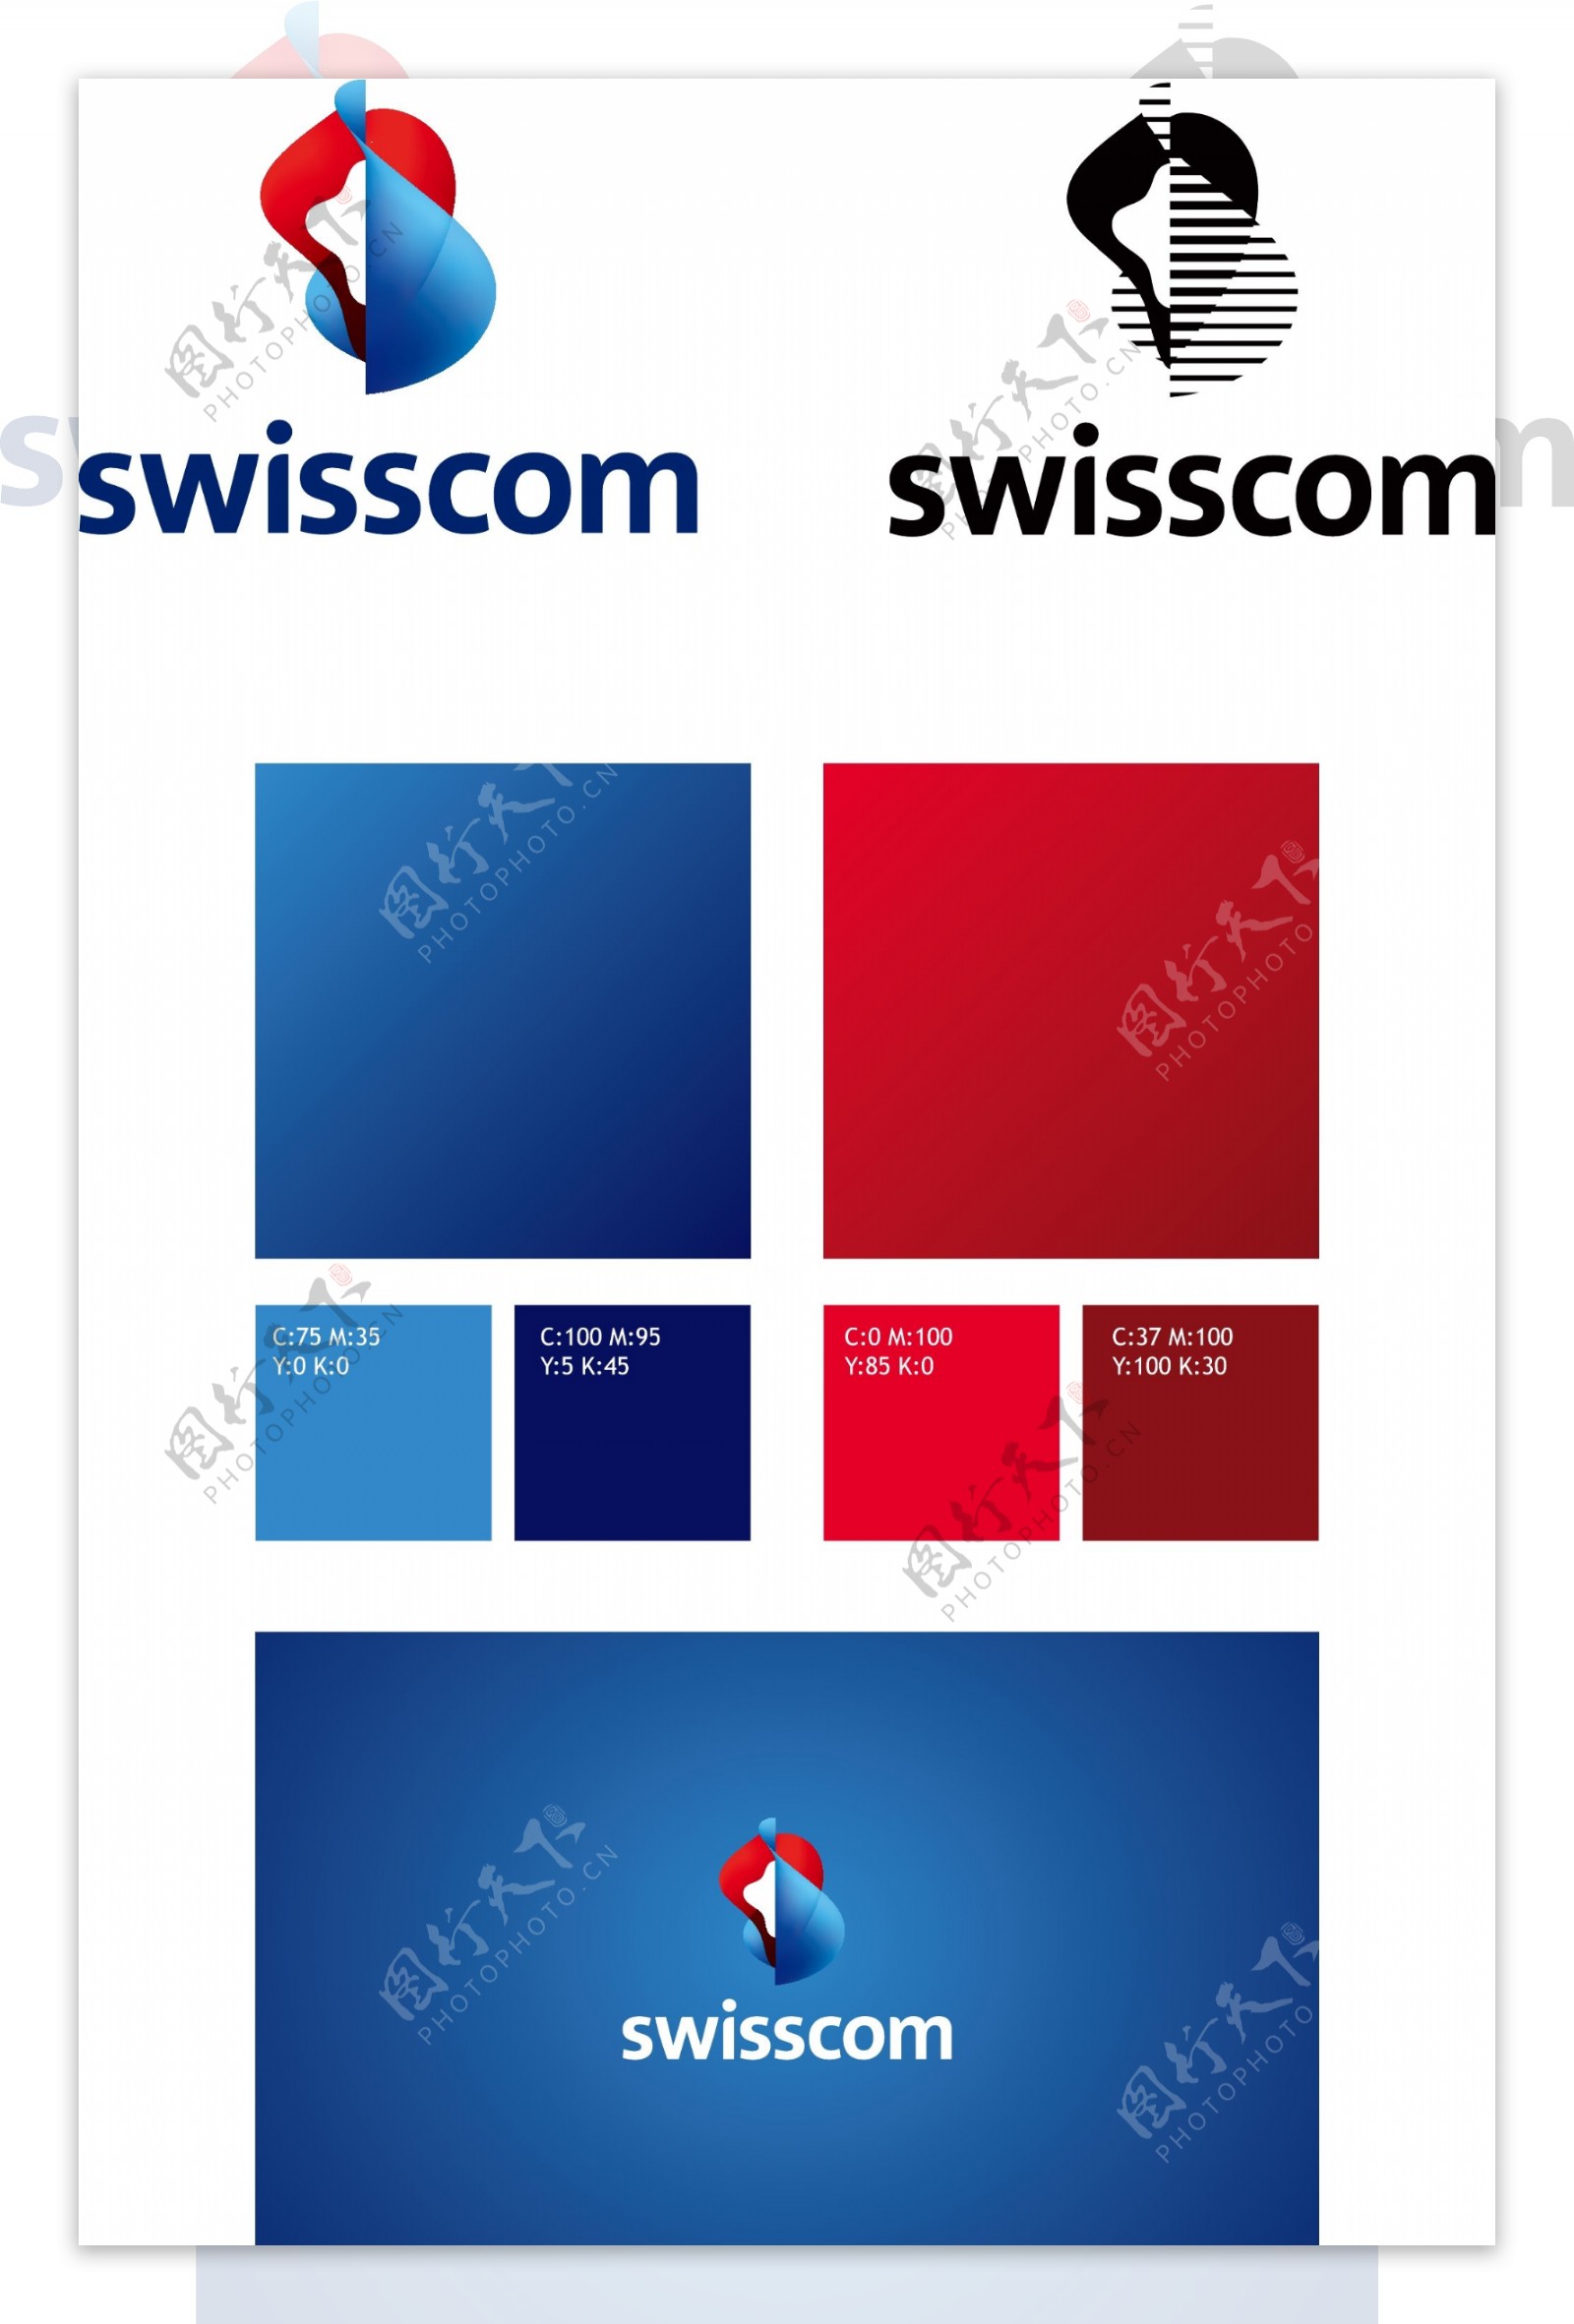 瑞士电信logo标志矢量图AI